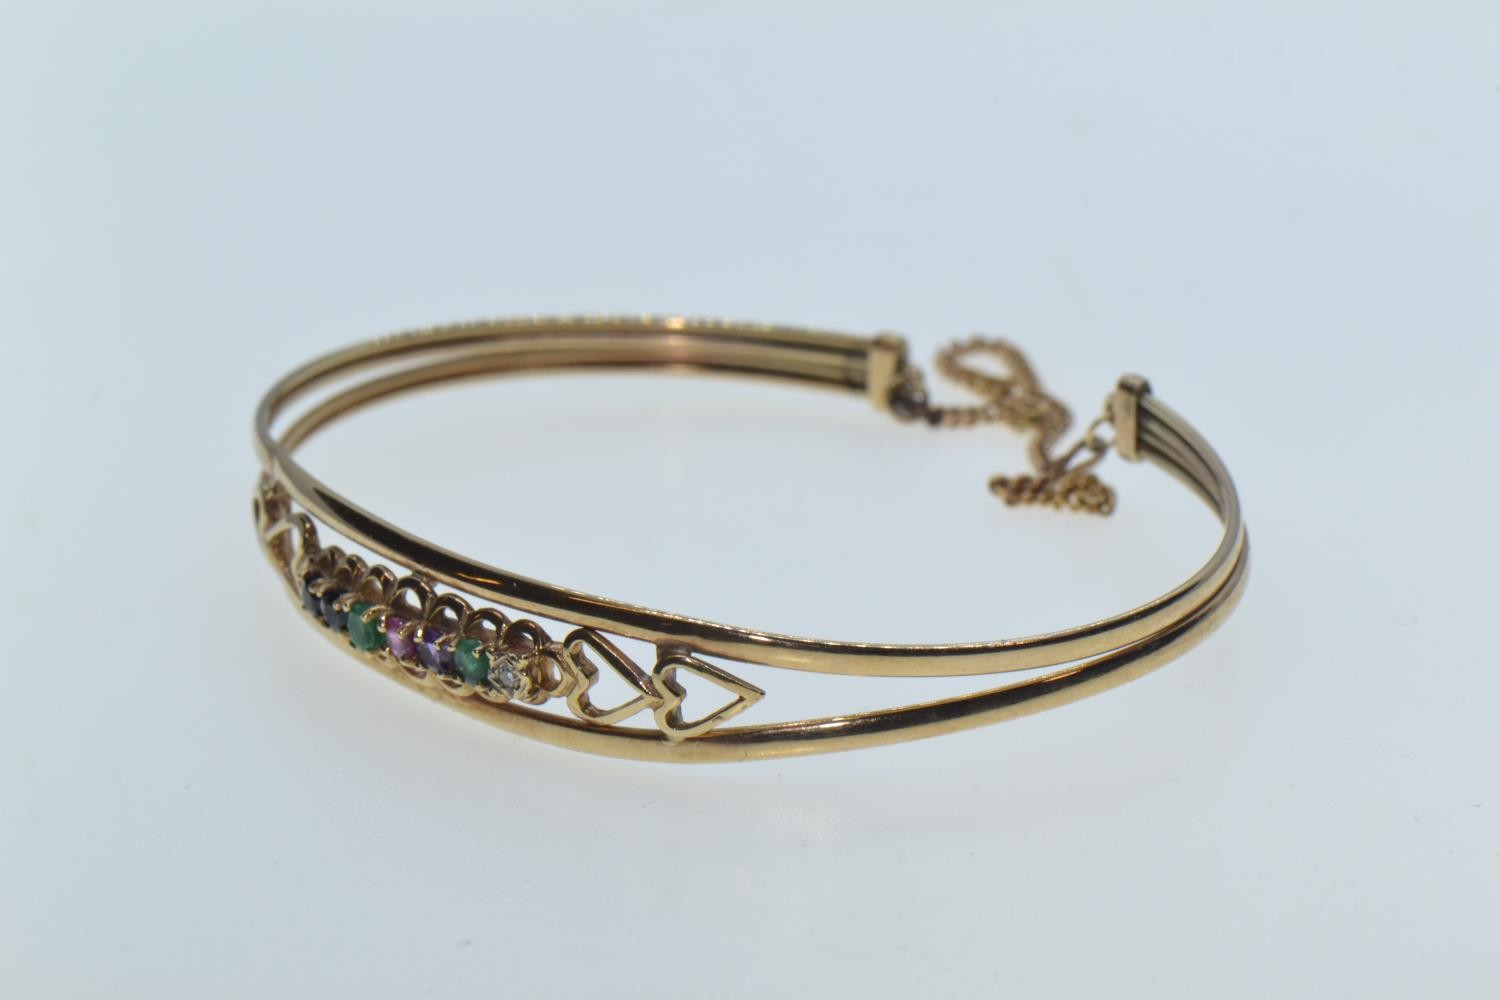 Scrap yellow metal & multi-gem set cuff bracelet, 5.89 grams  - Image 2 of 4